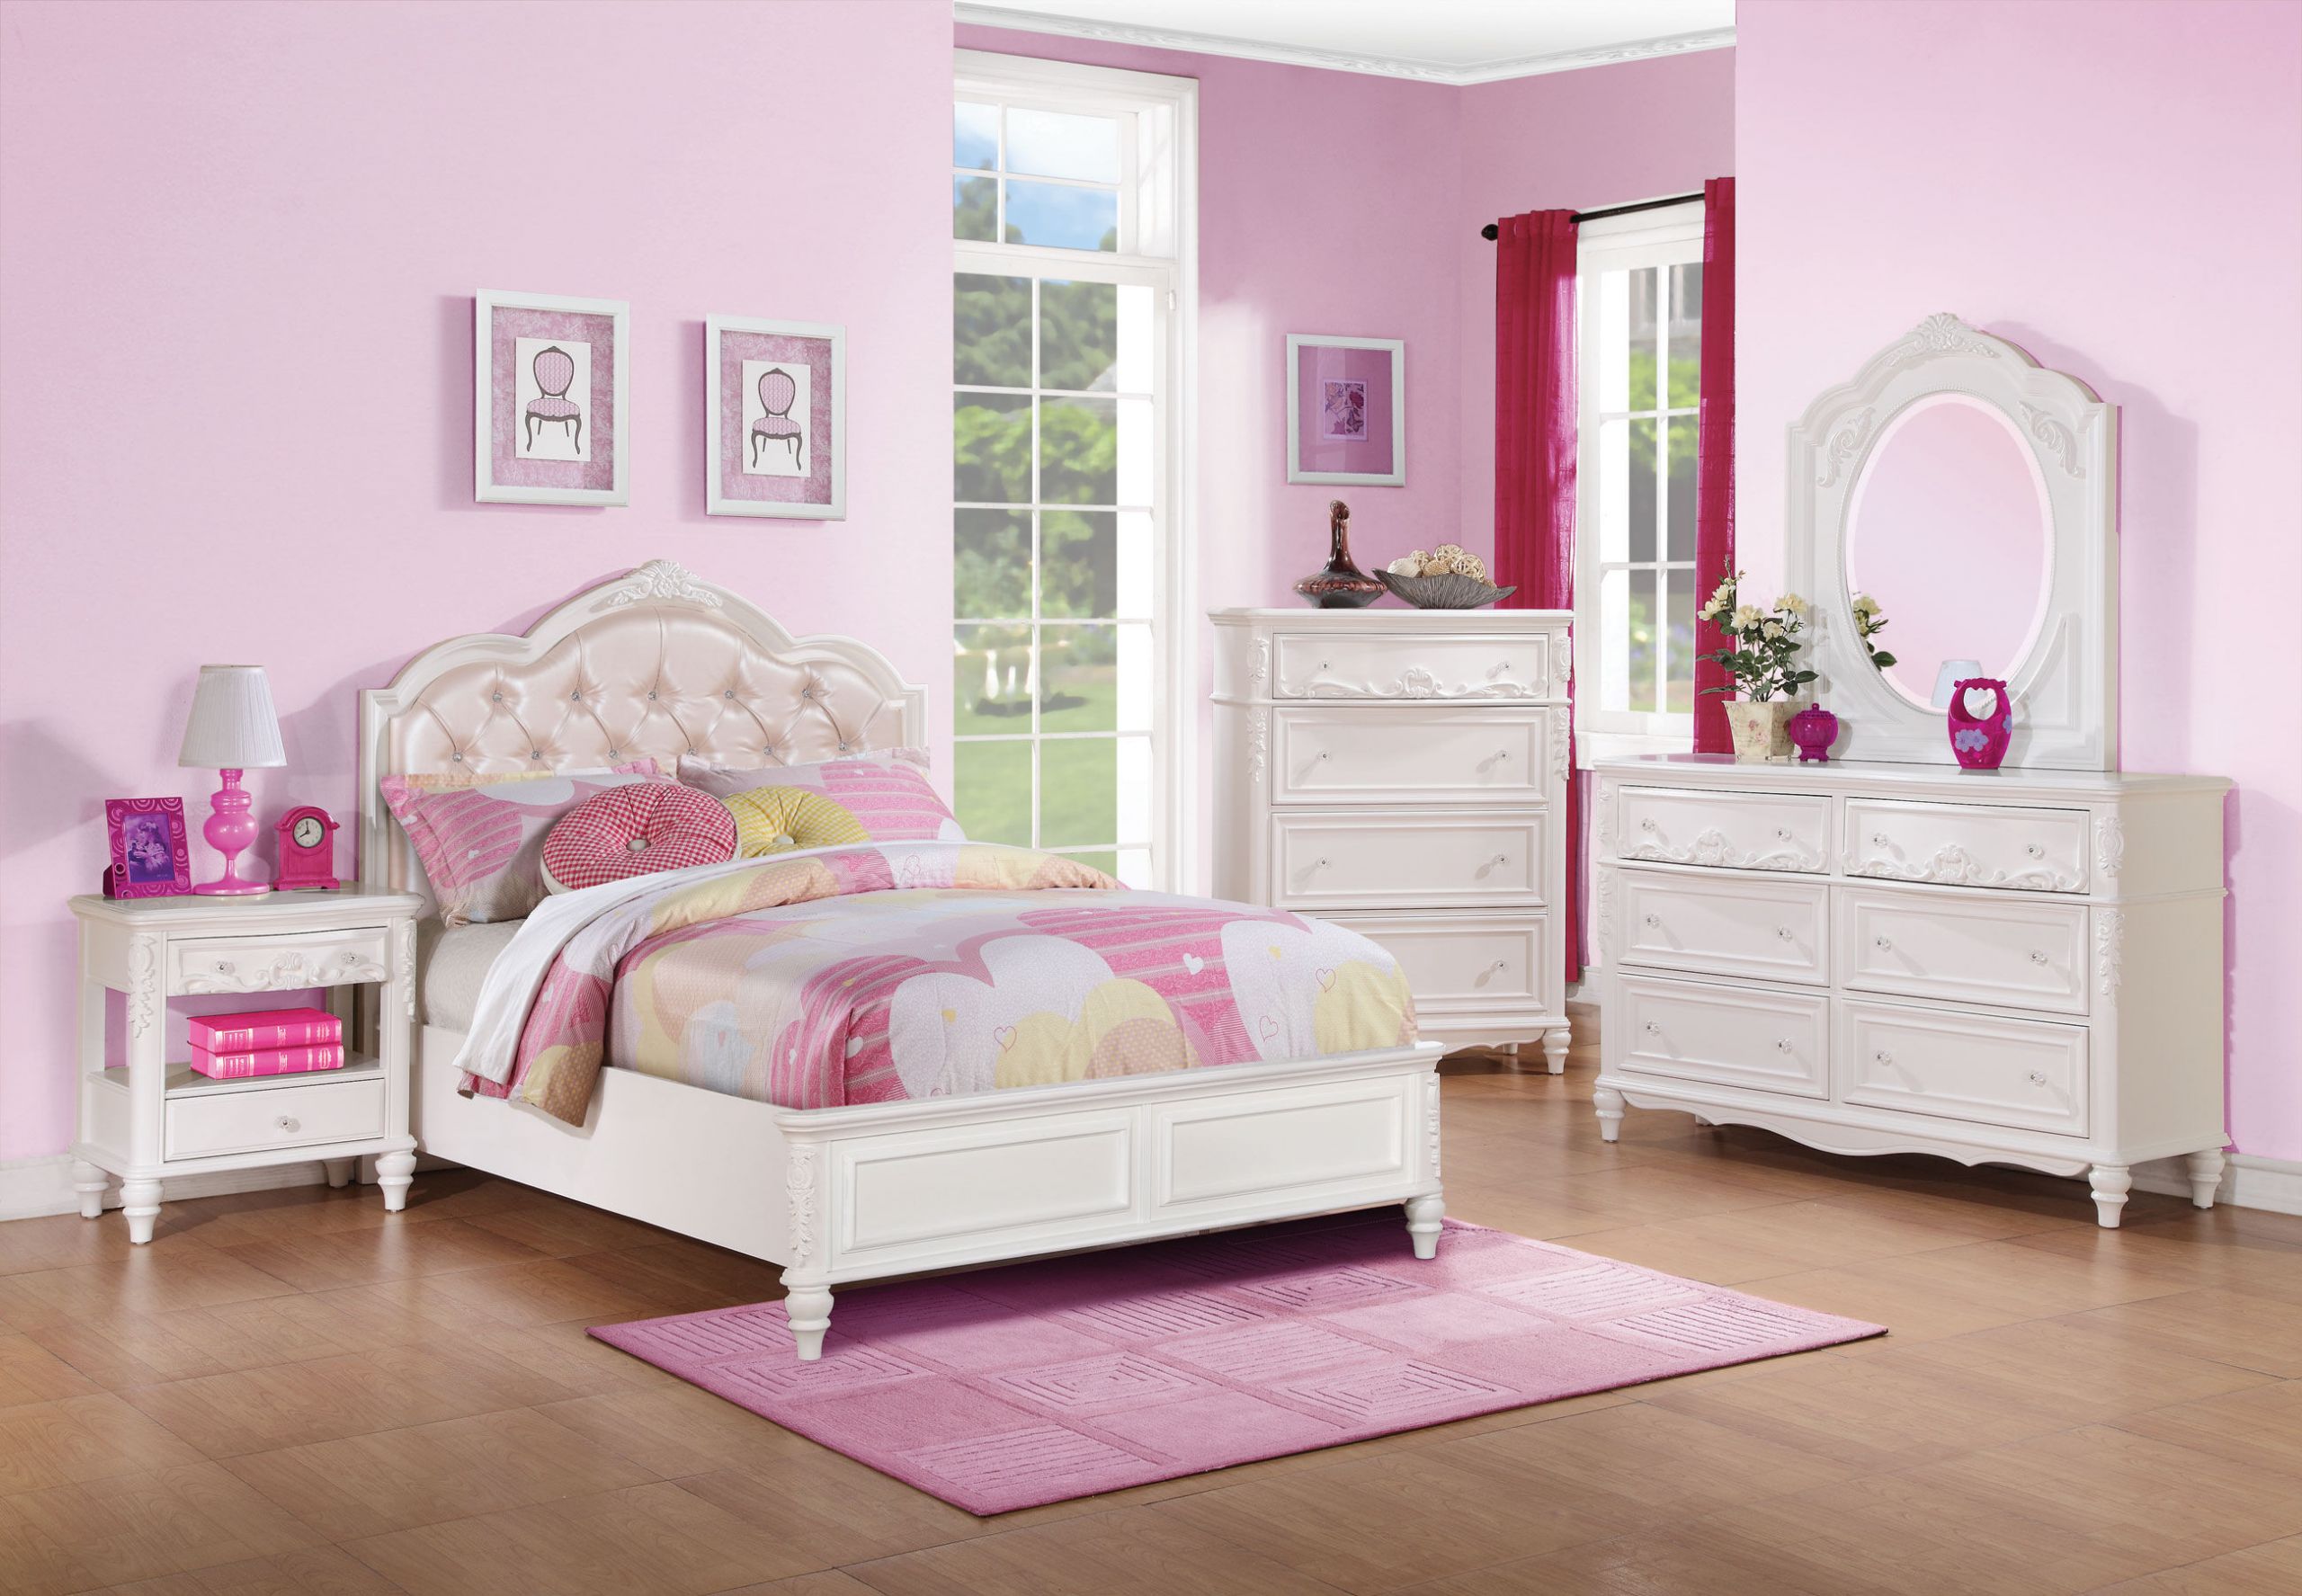 Kids Full Bedroom Sets
 Coaster Furniture Caroline 4pc Kids Bedroom Set with Twin